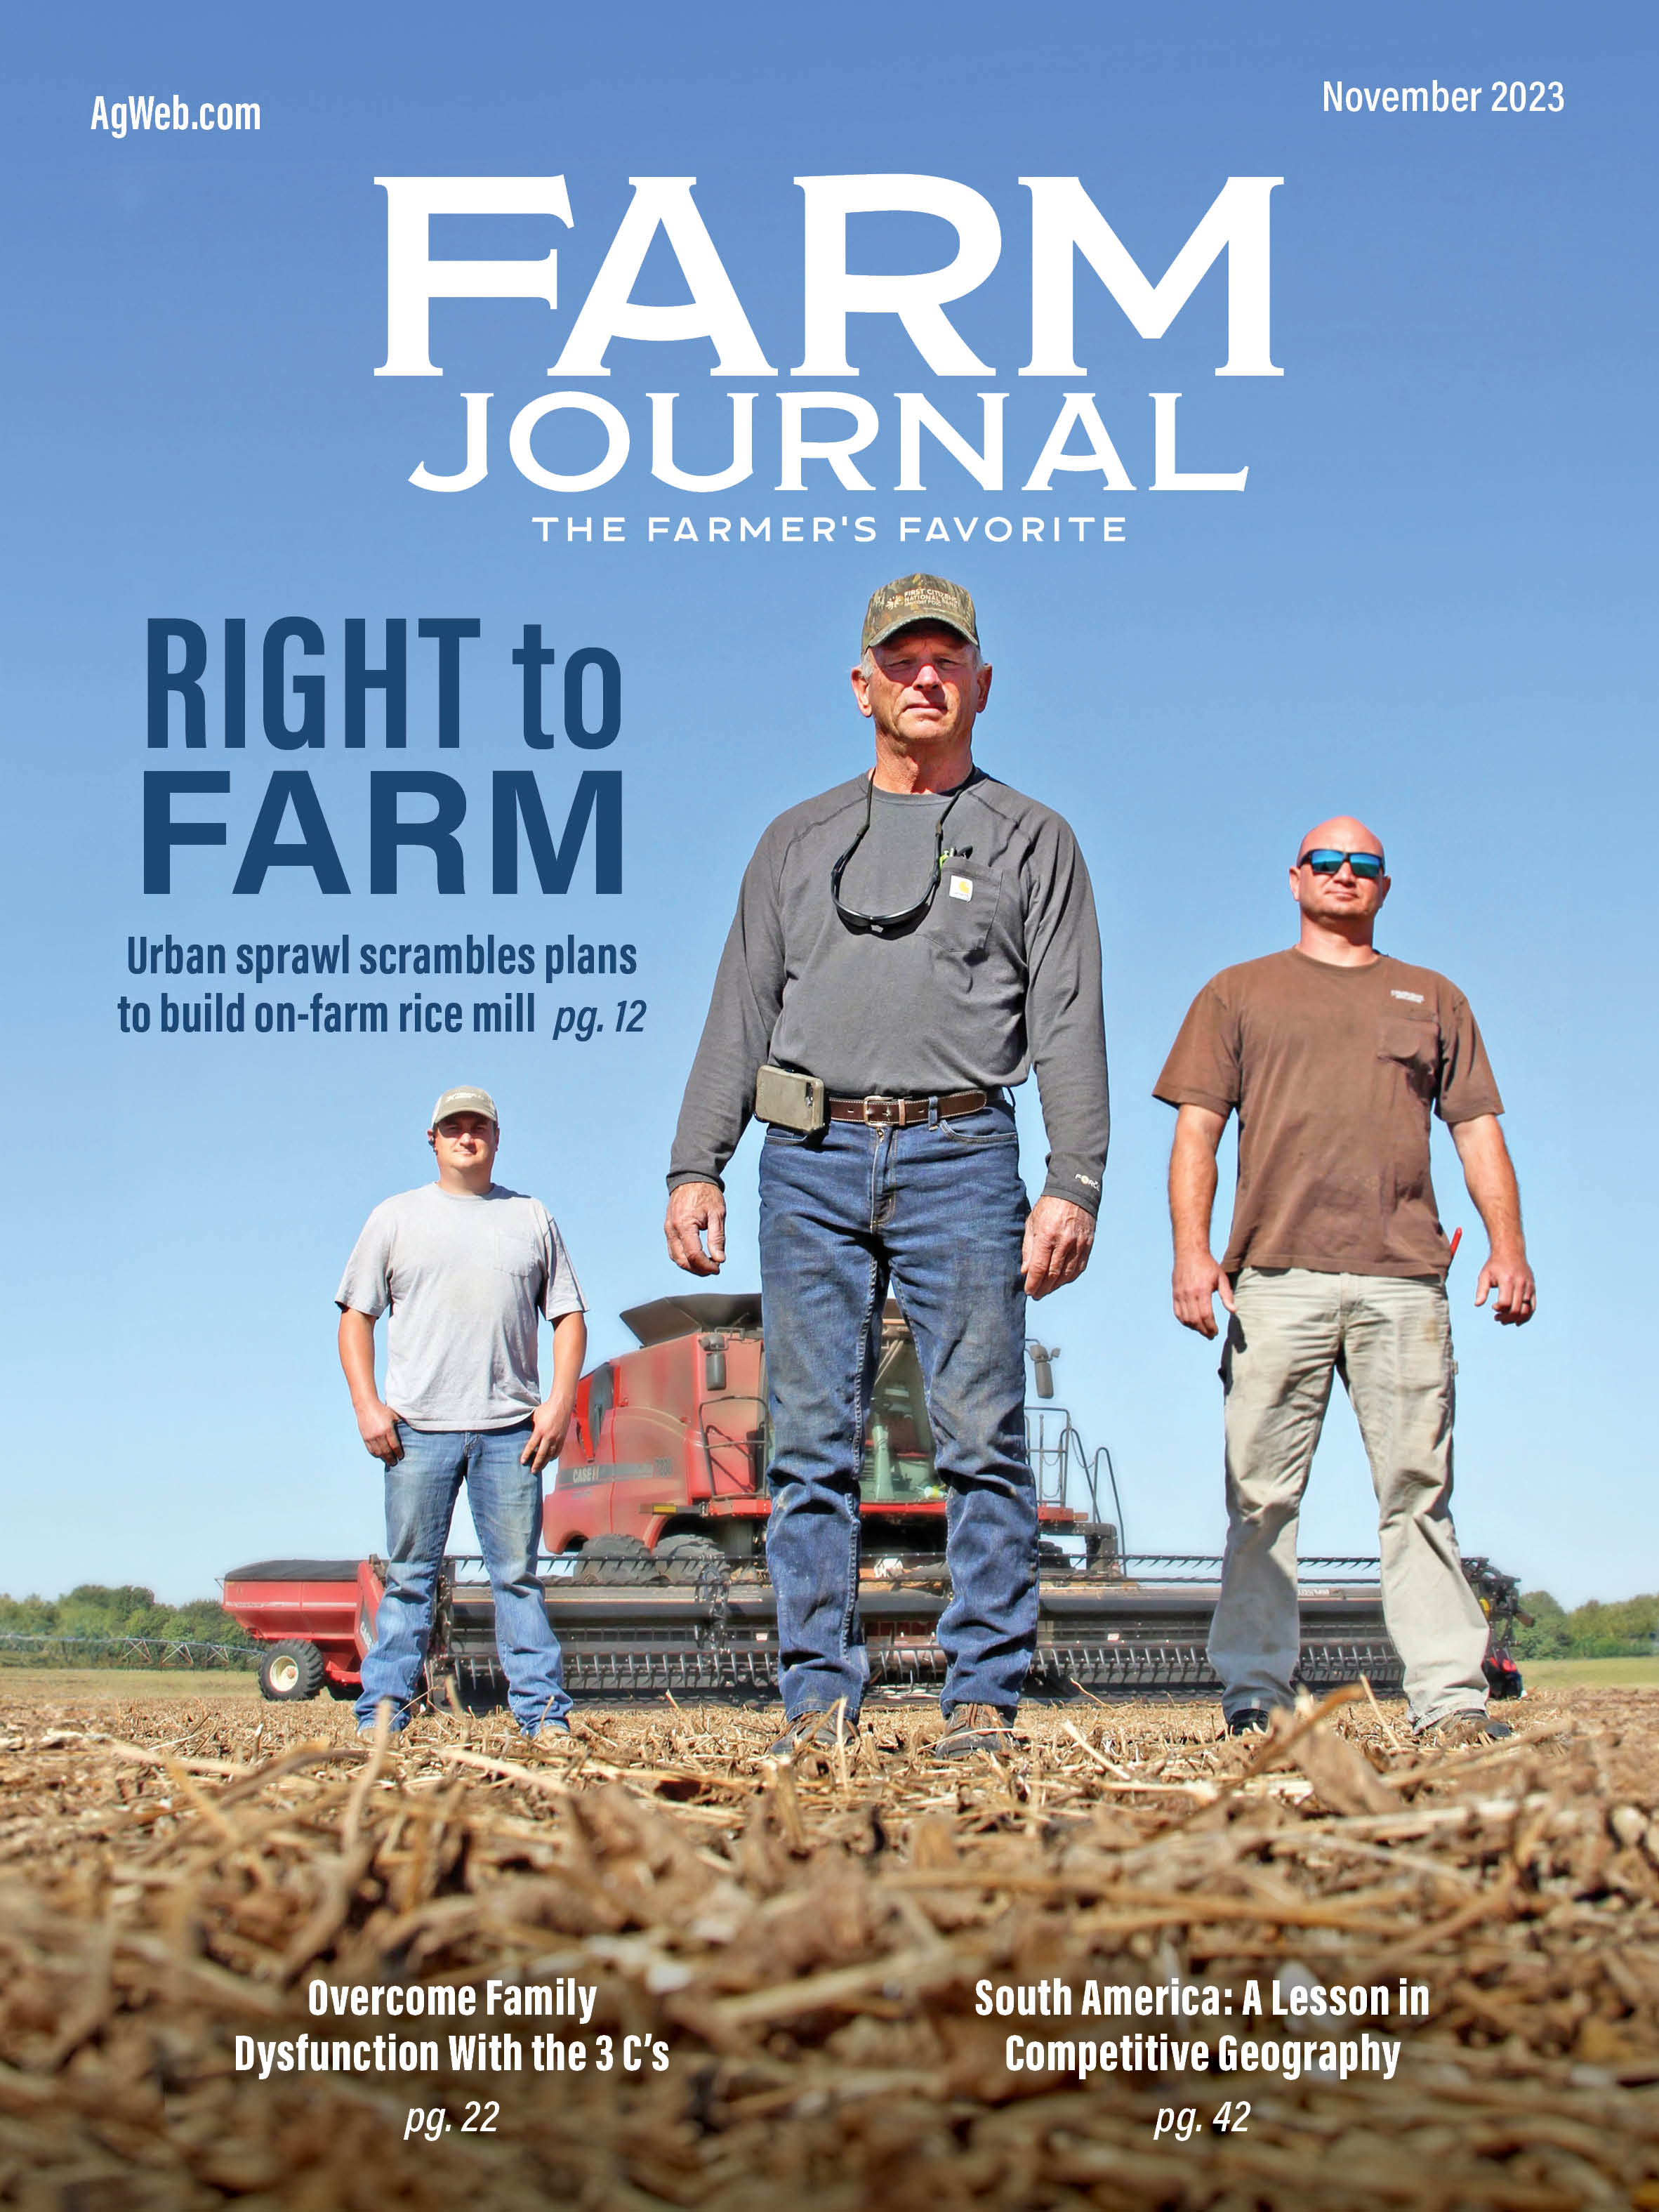  Farm Journal November 2023 